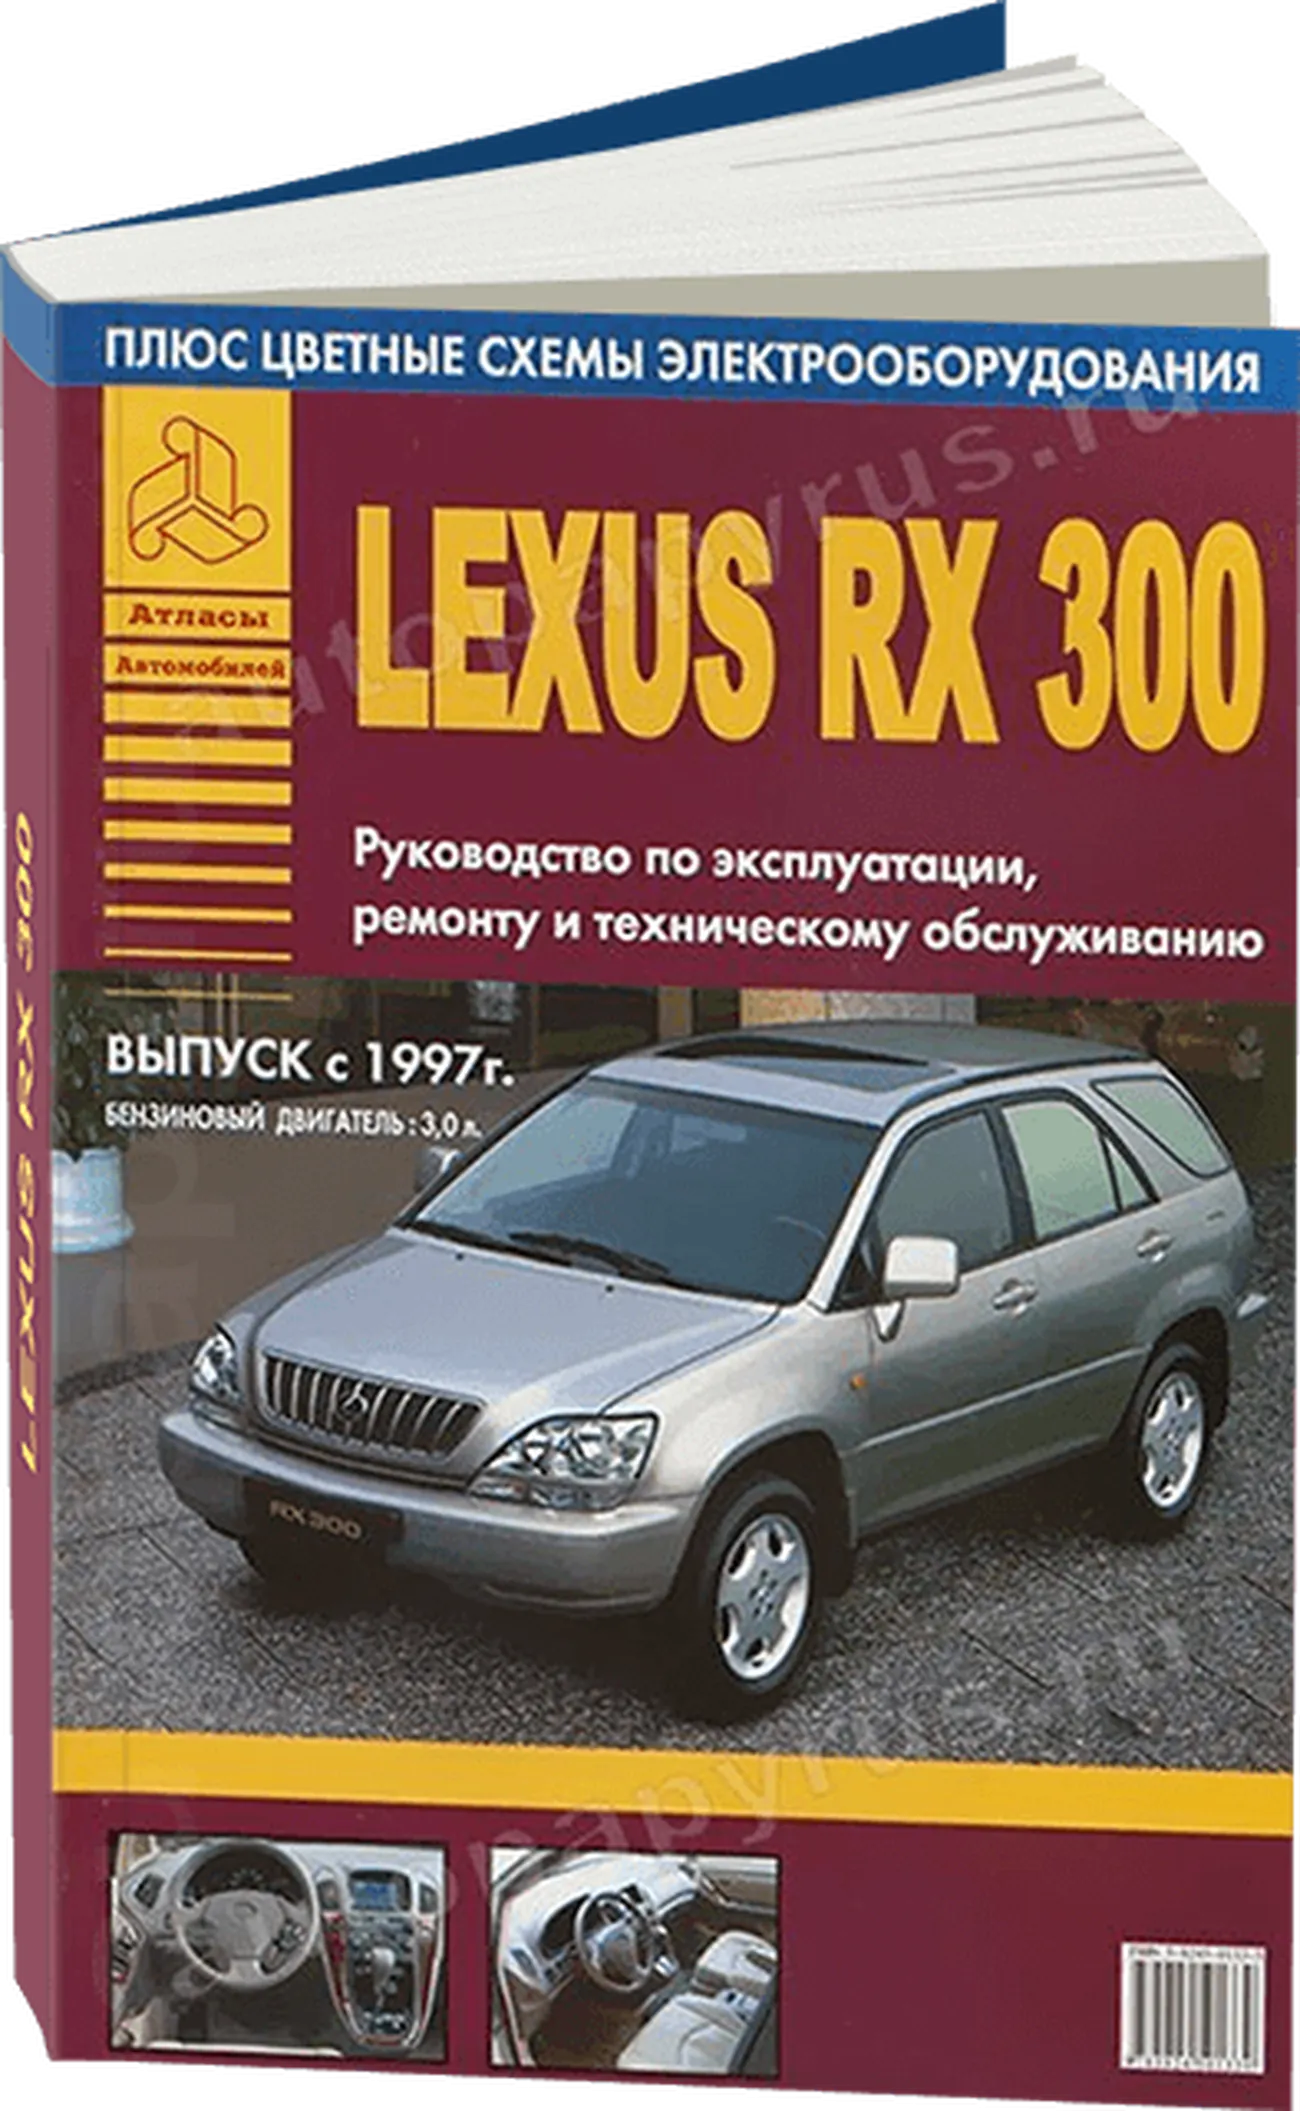 Книга: LEXUS RX300 (б) с 1997 г.в., рем., экспл., то | Арго-Авто